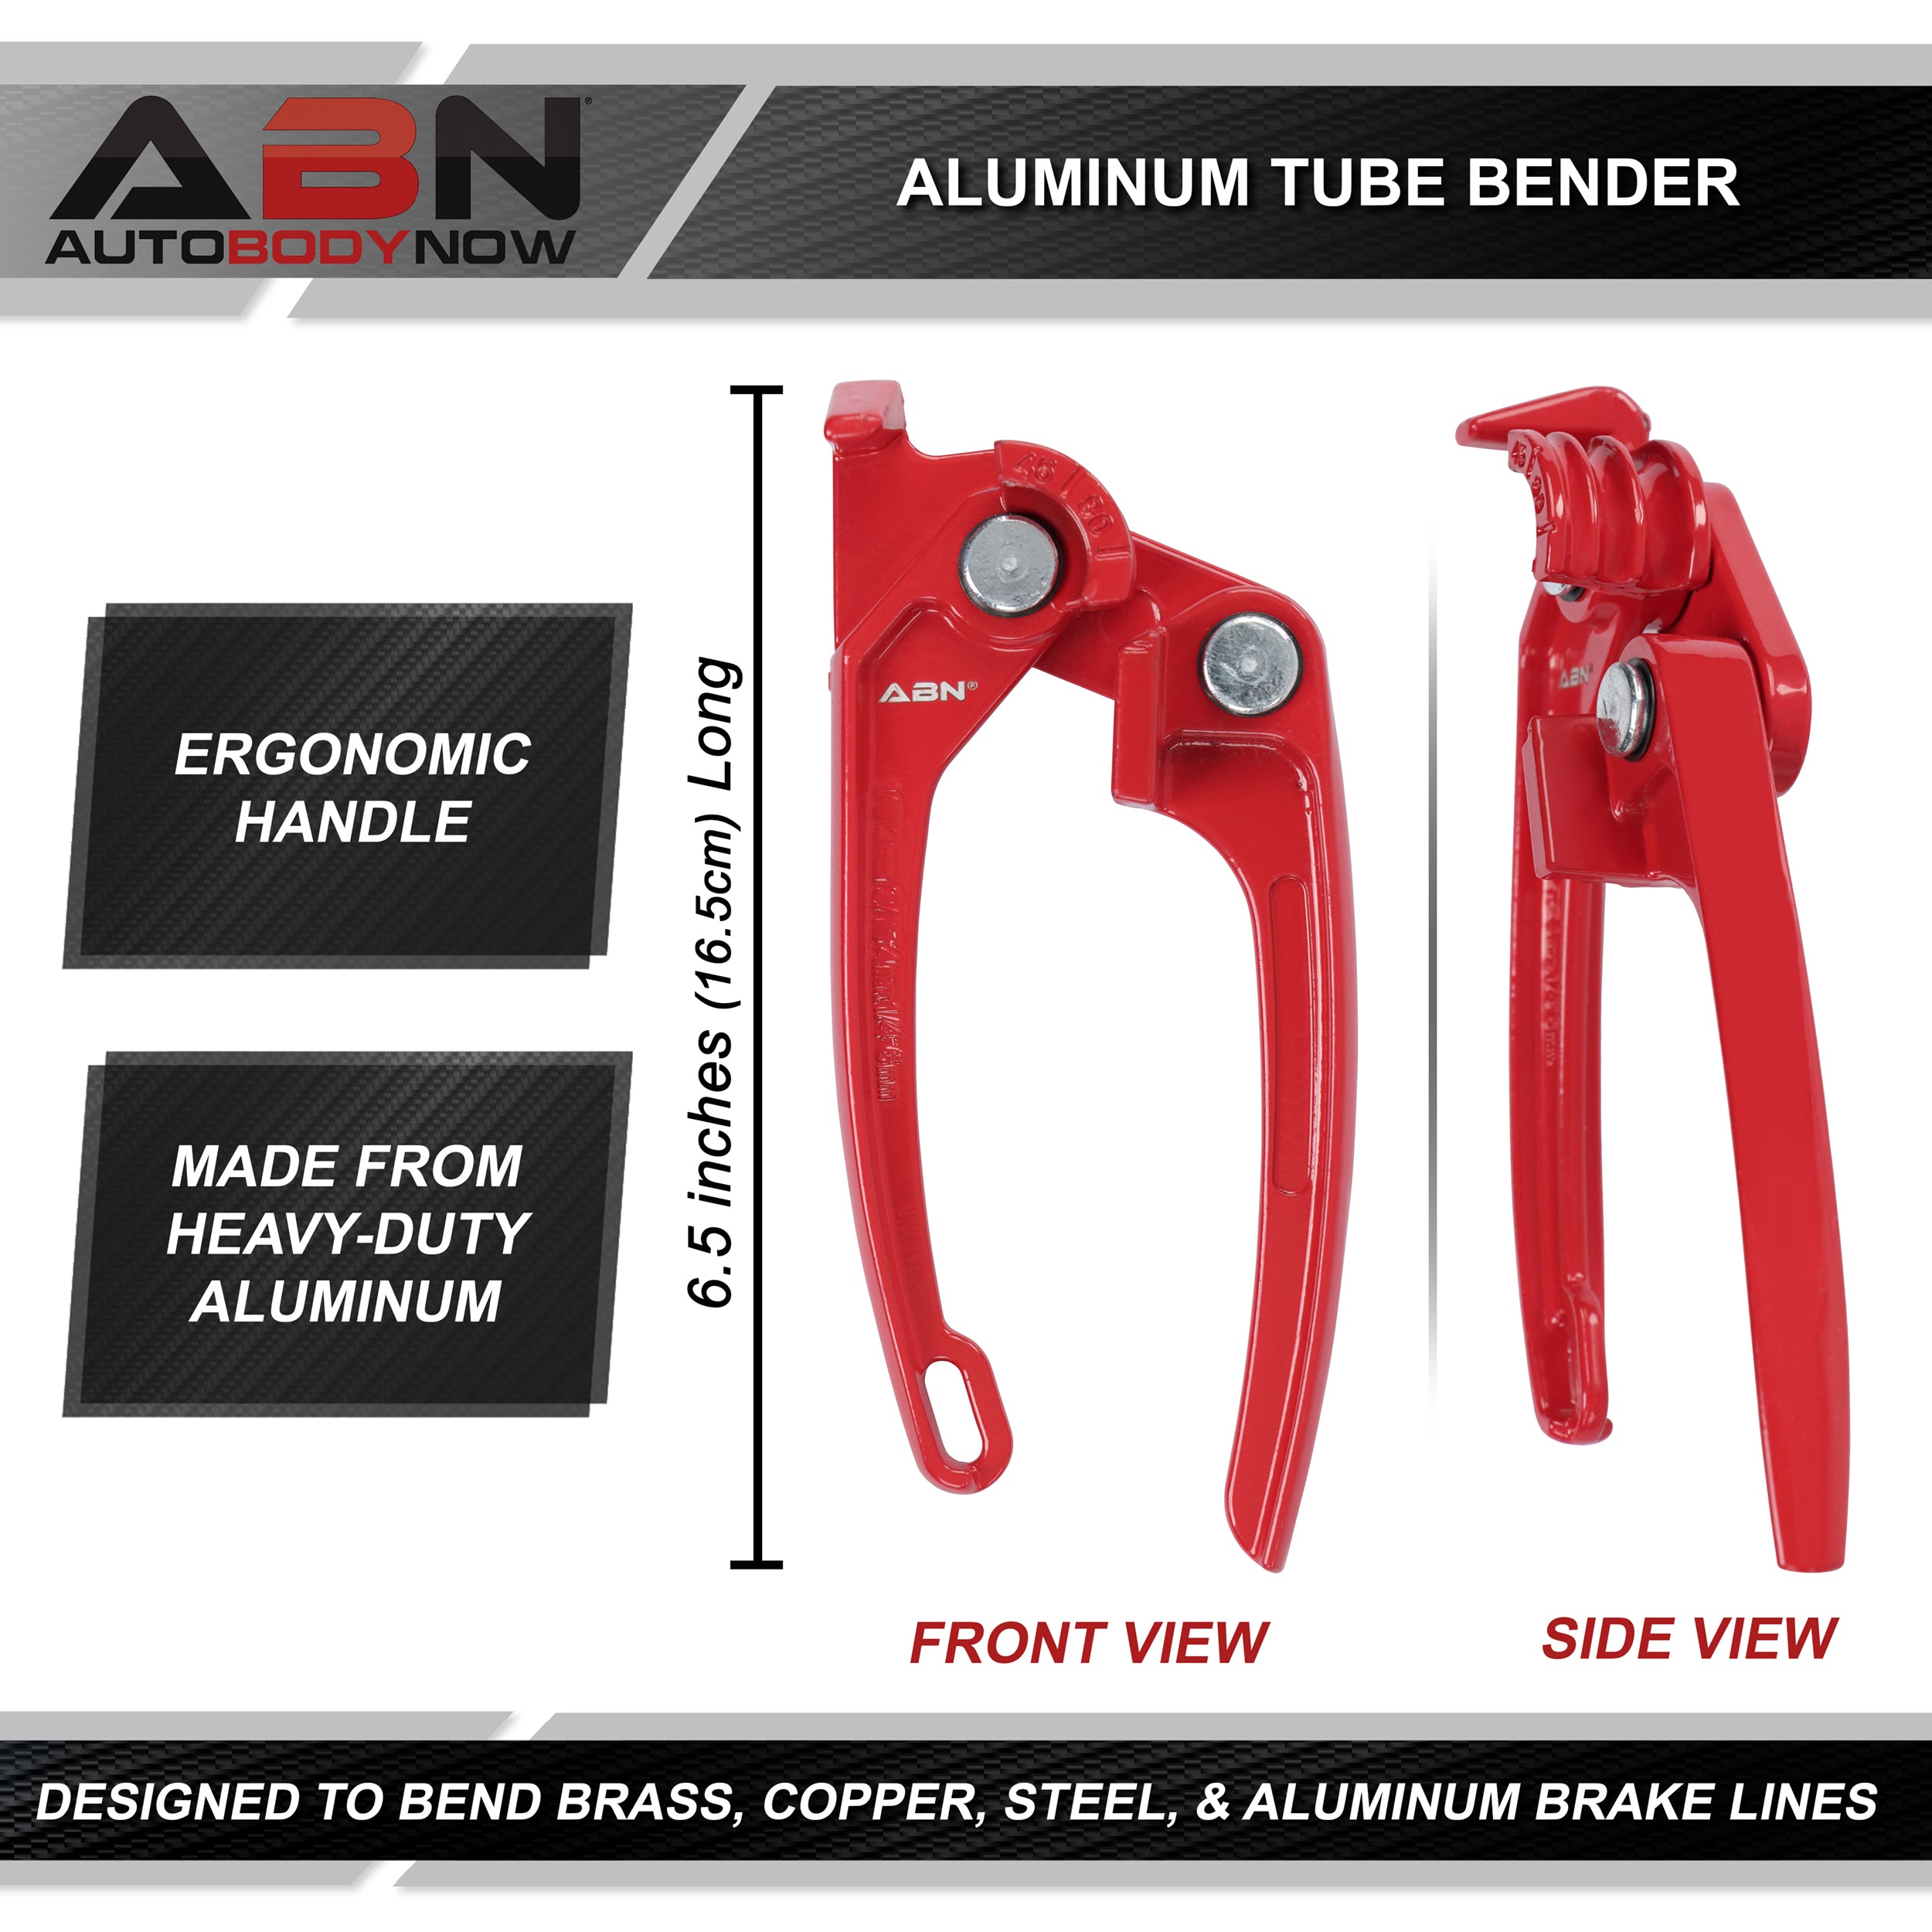 Aluminum Tube Bender - Manual Brake Line Angle Setter Bender Tool